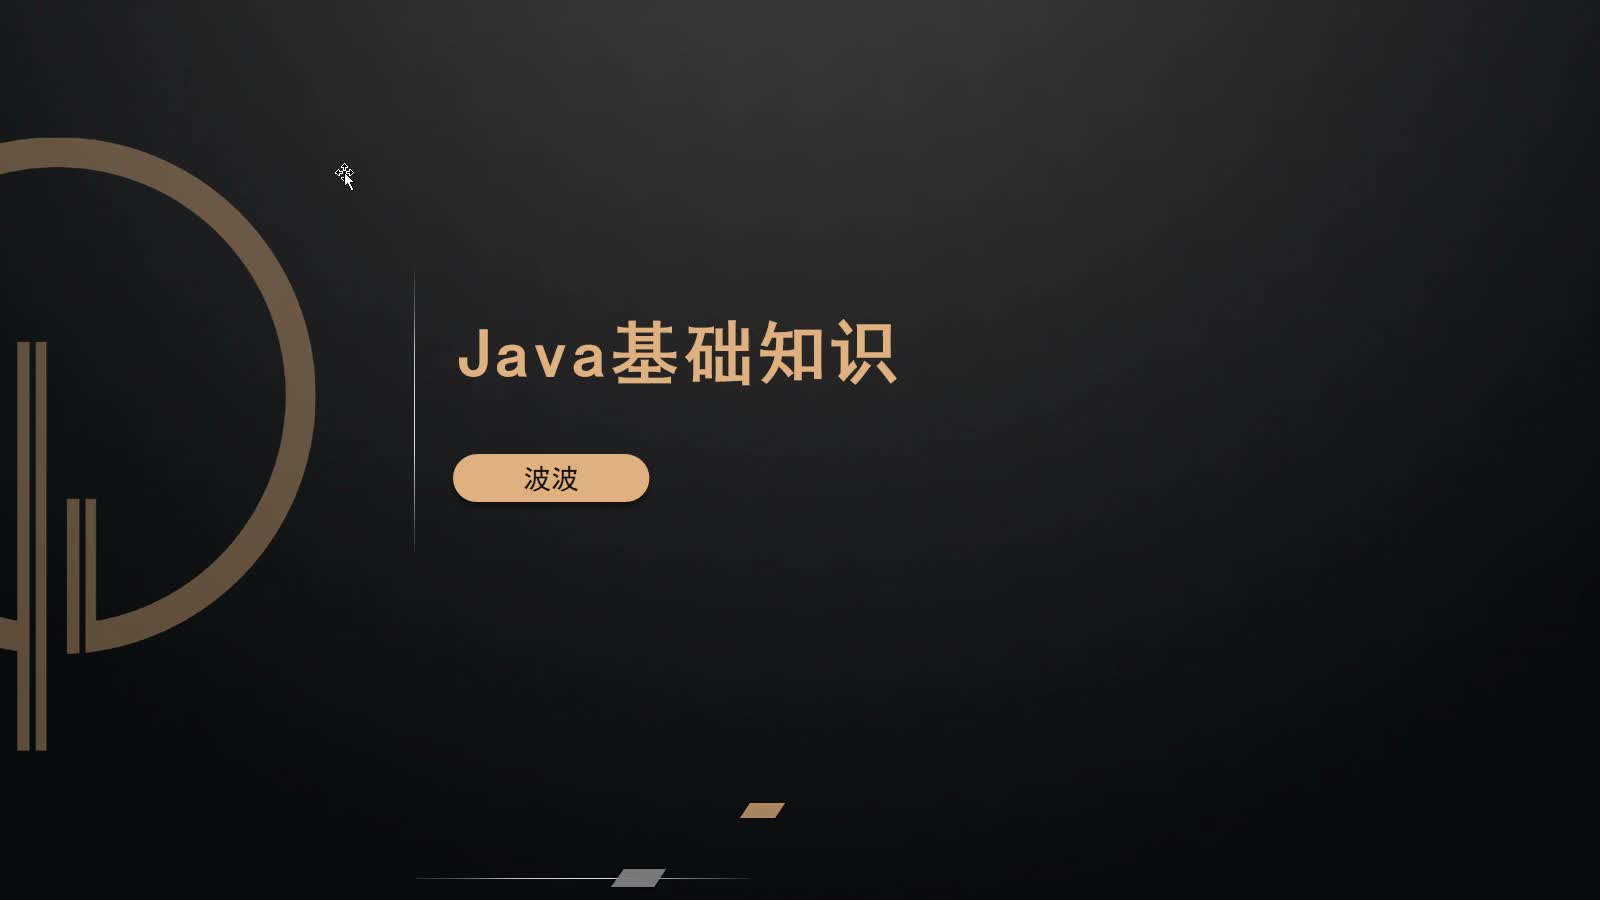 02.Java基础知识